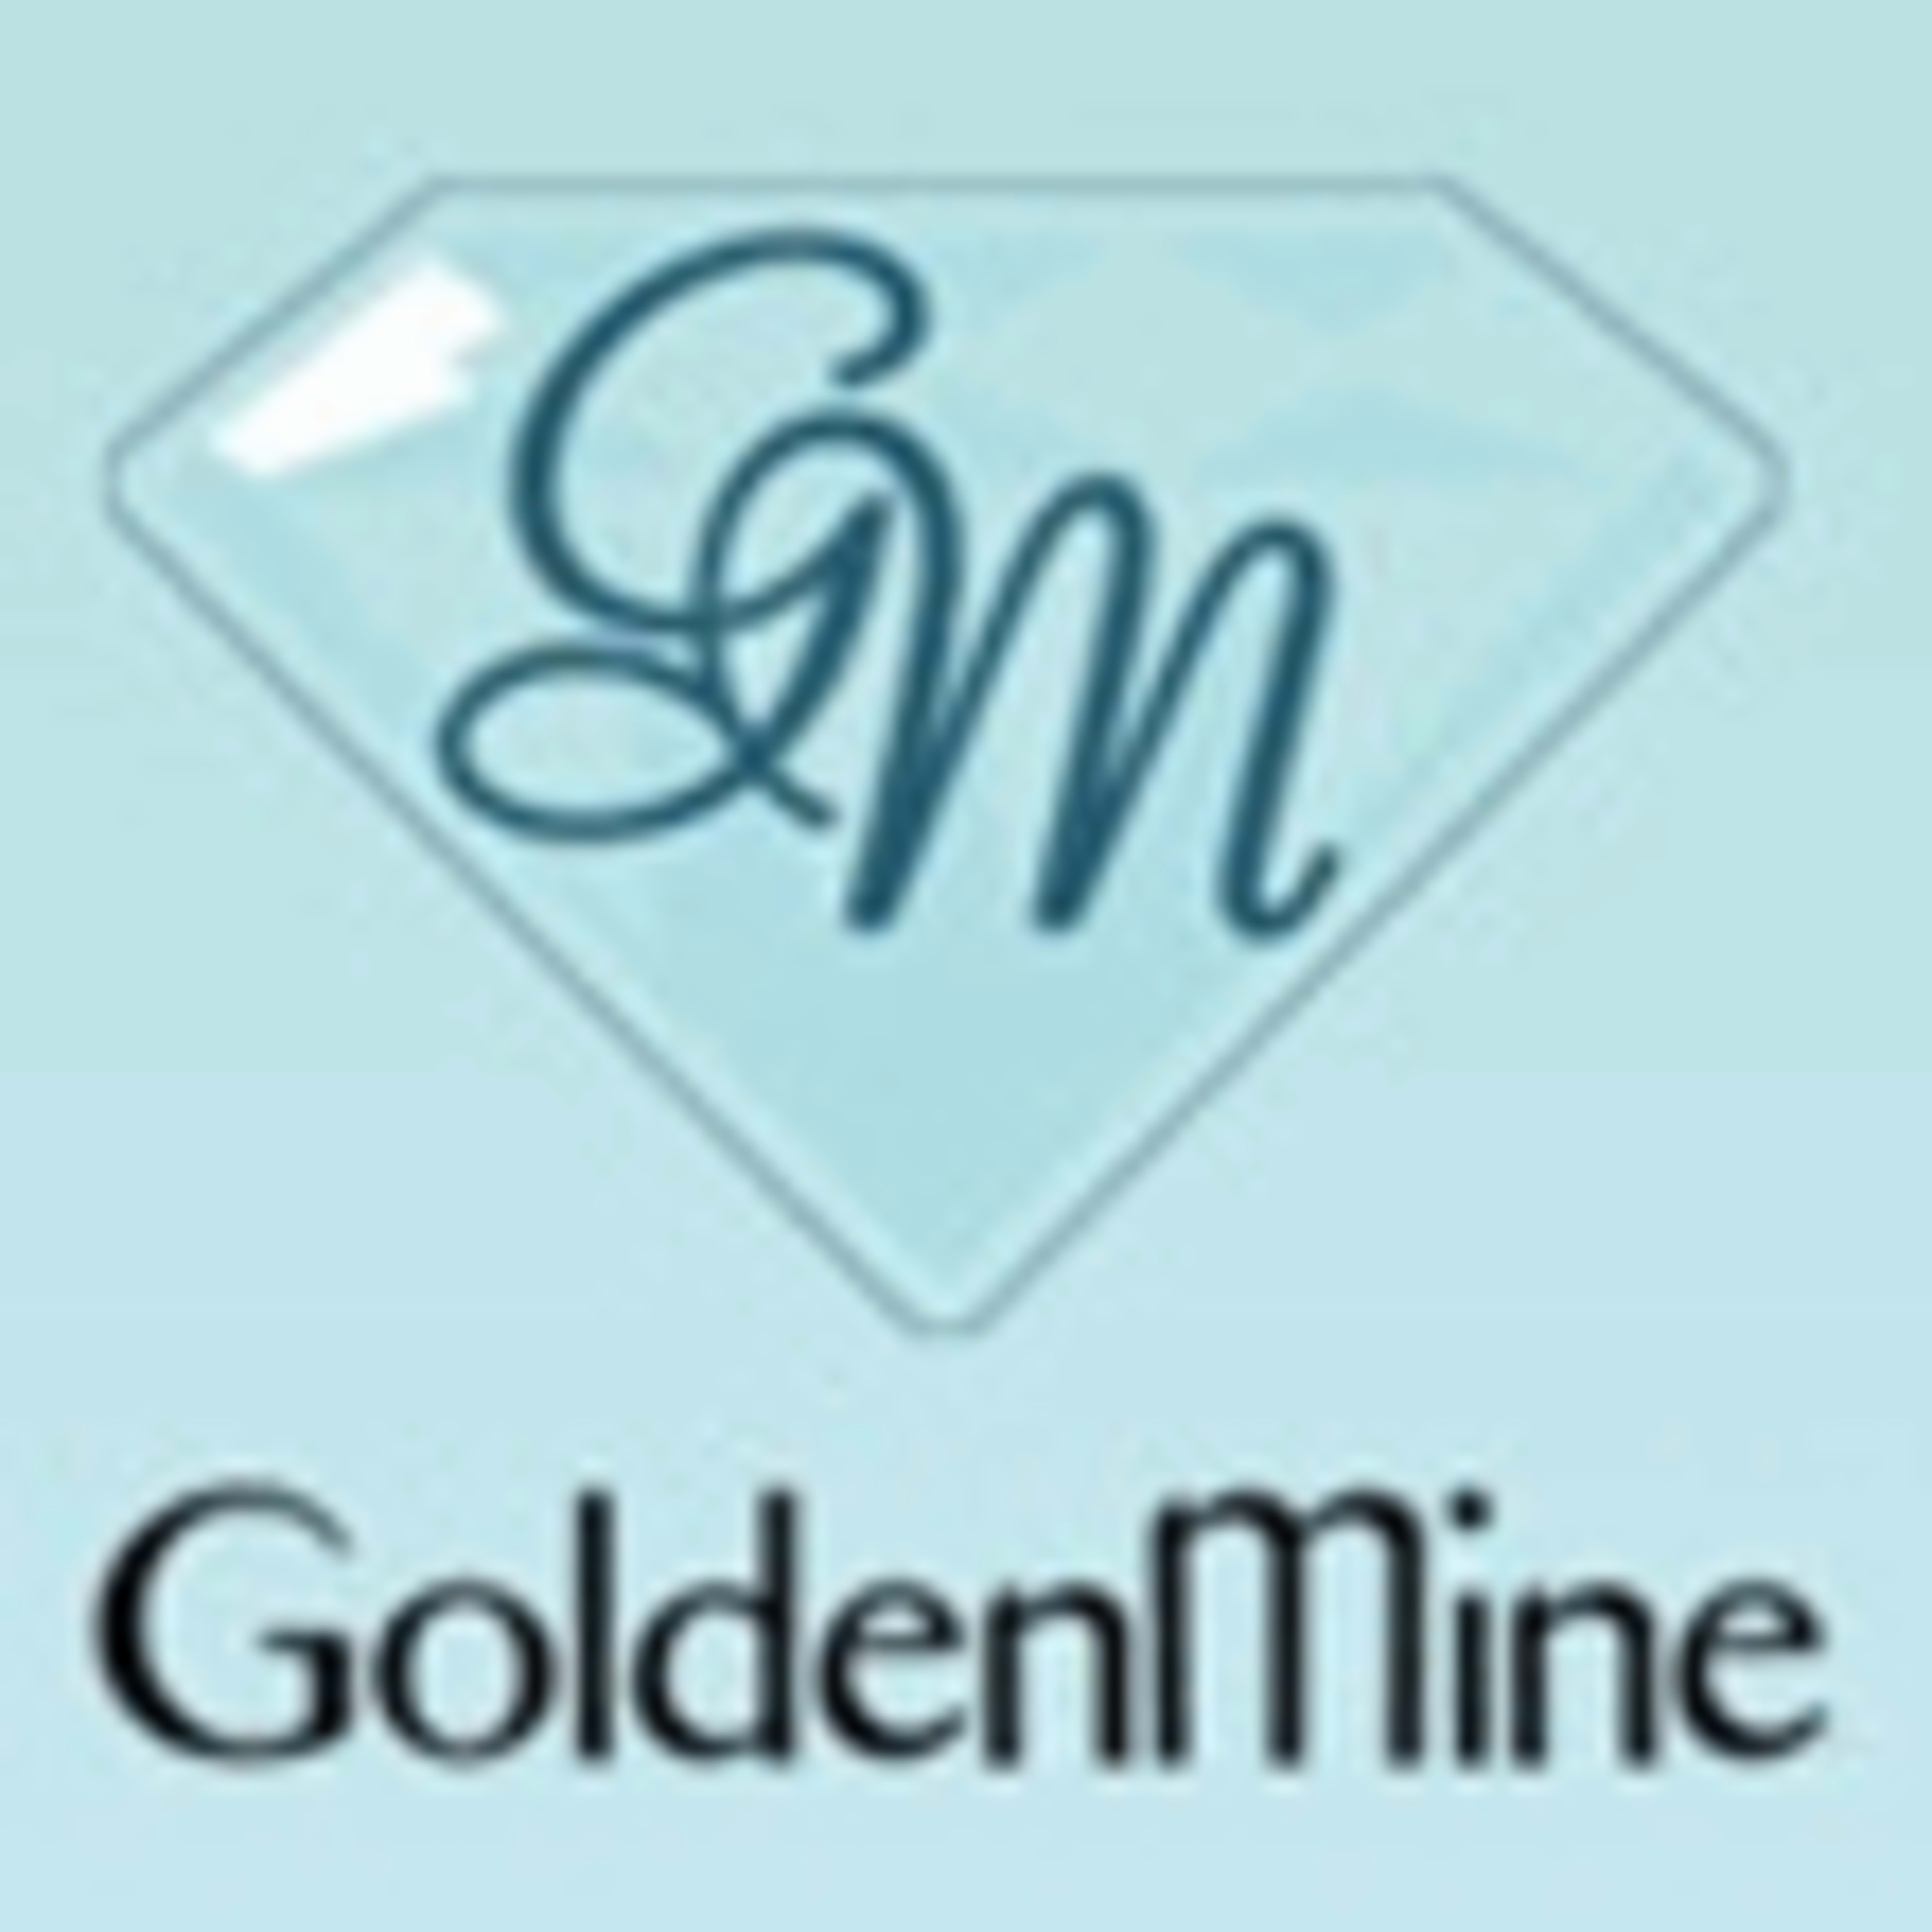 GoldenMineCode